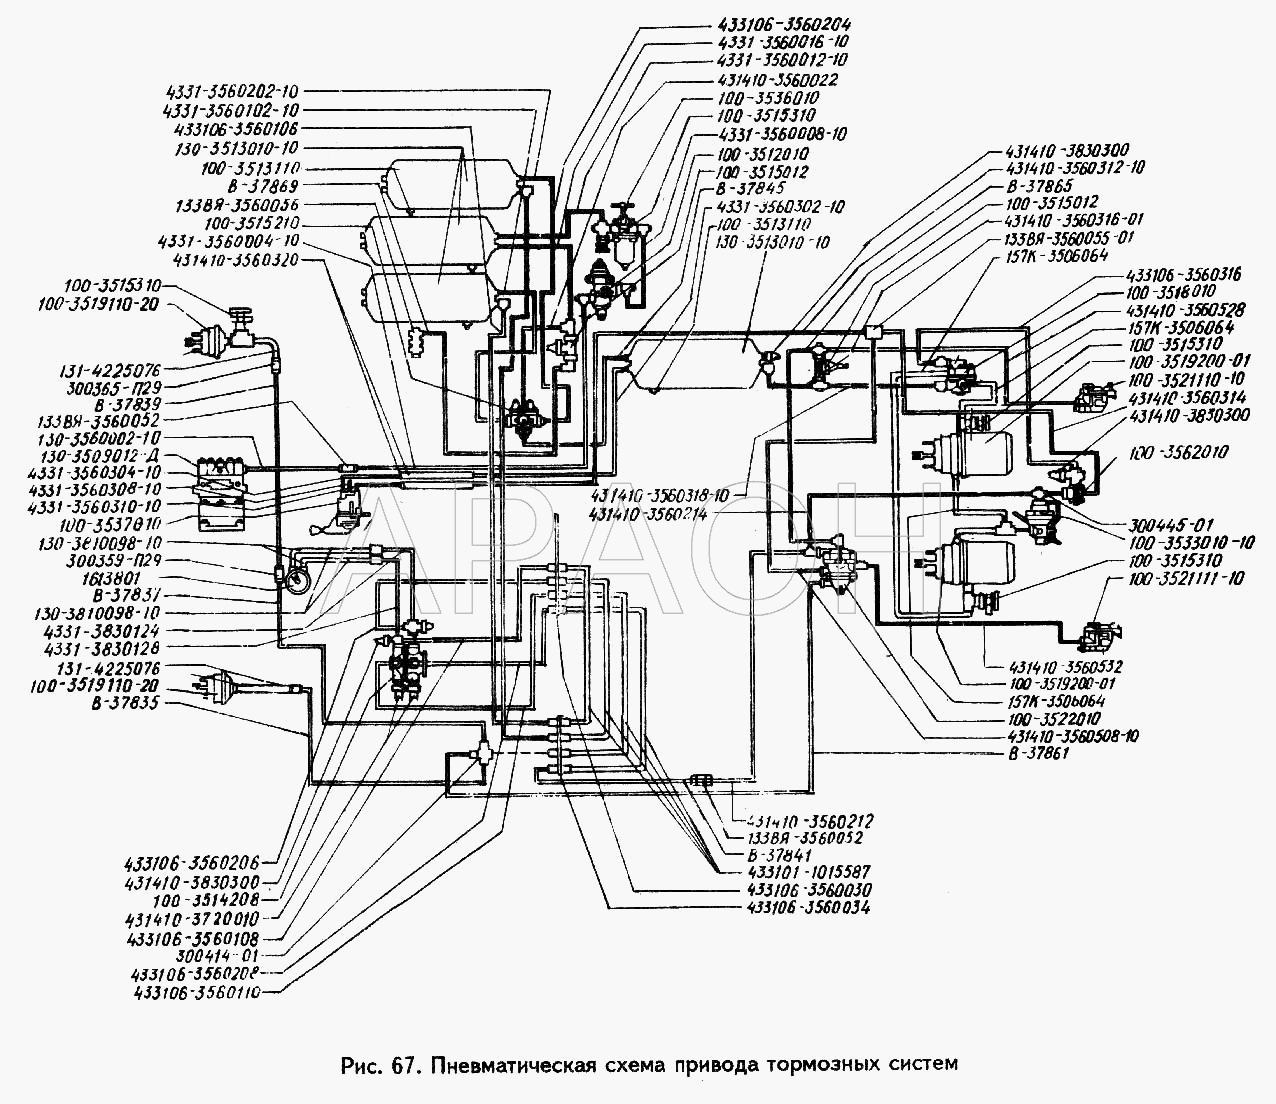 Пневматическая схема привода тормозных систем ЗИЛ 442160